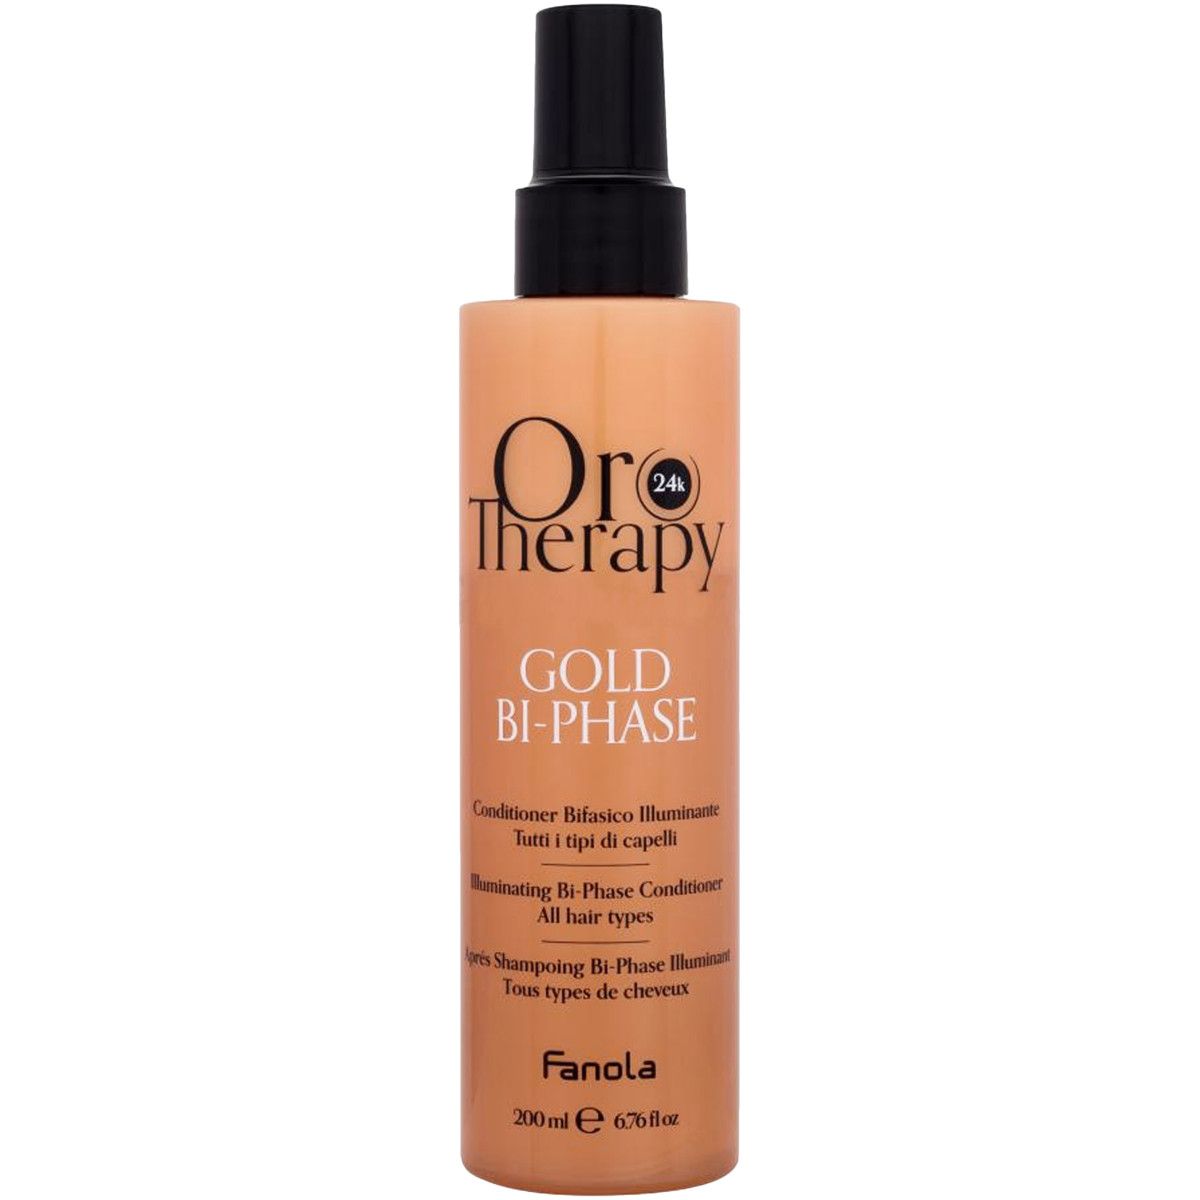 Fanola Oro Therapy Gold Bi-phase - odżywka dwufazowa do włosów matowych, 200ml